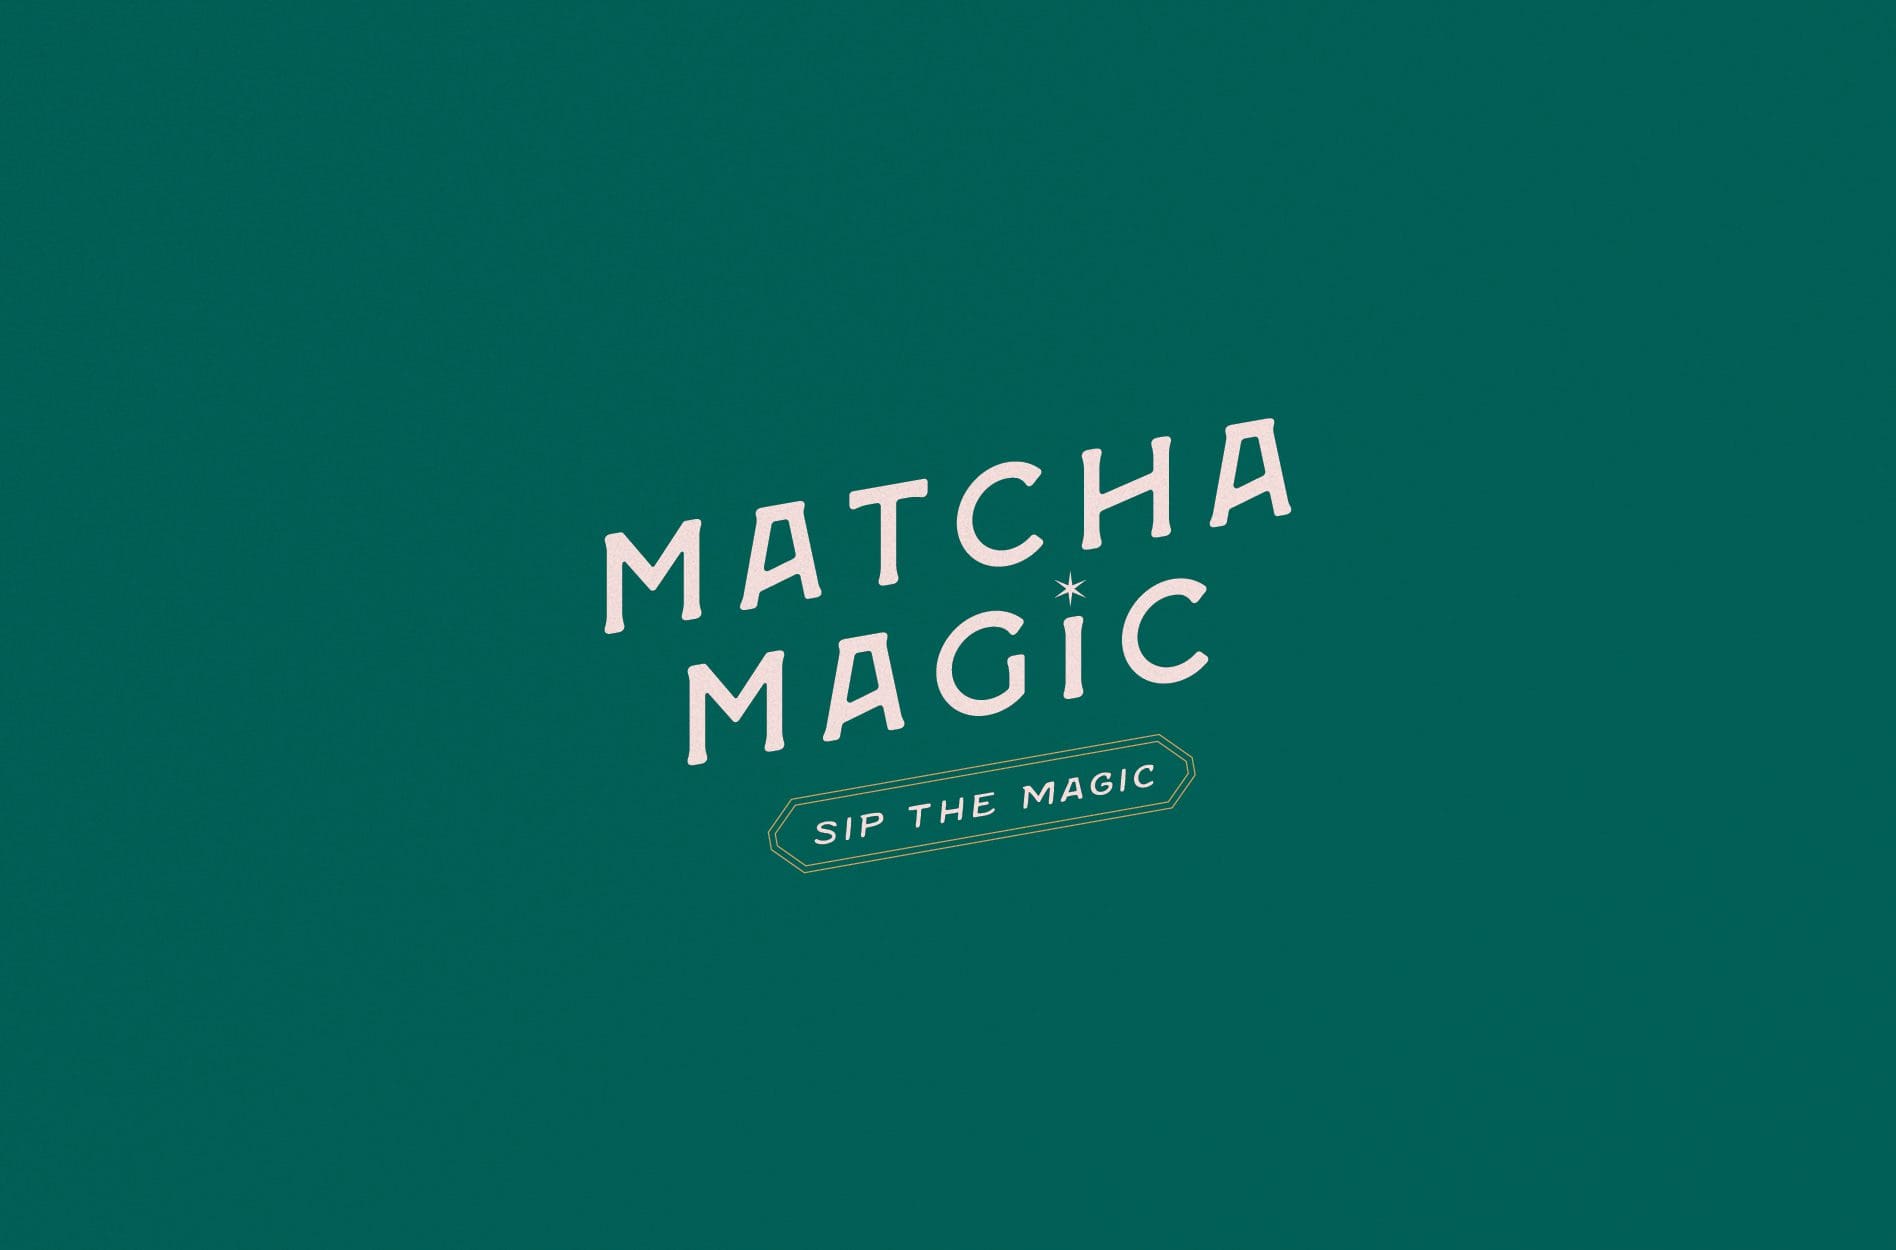 Matcha Magic Cafe - LOGO Design